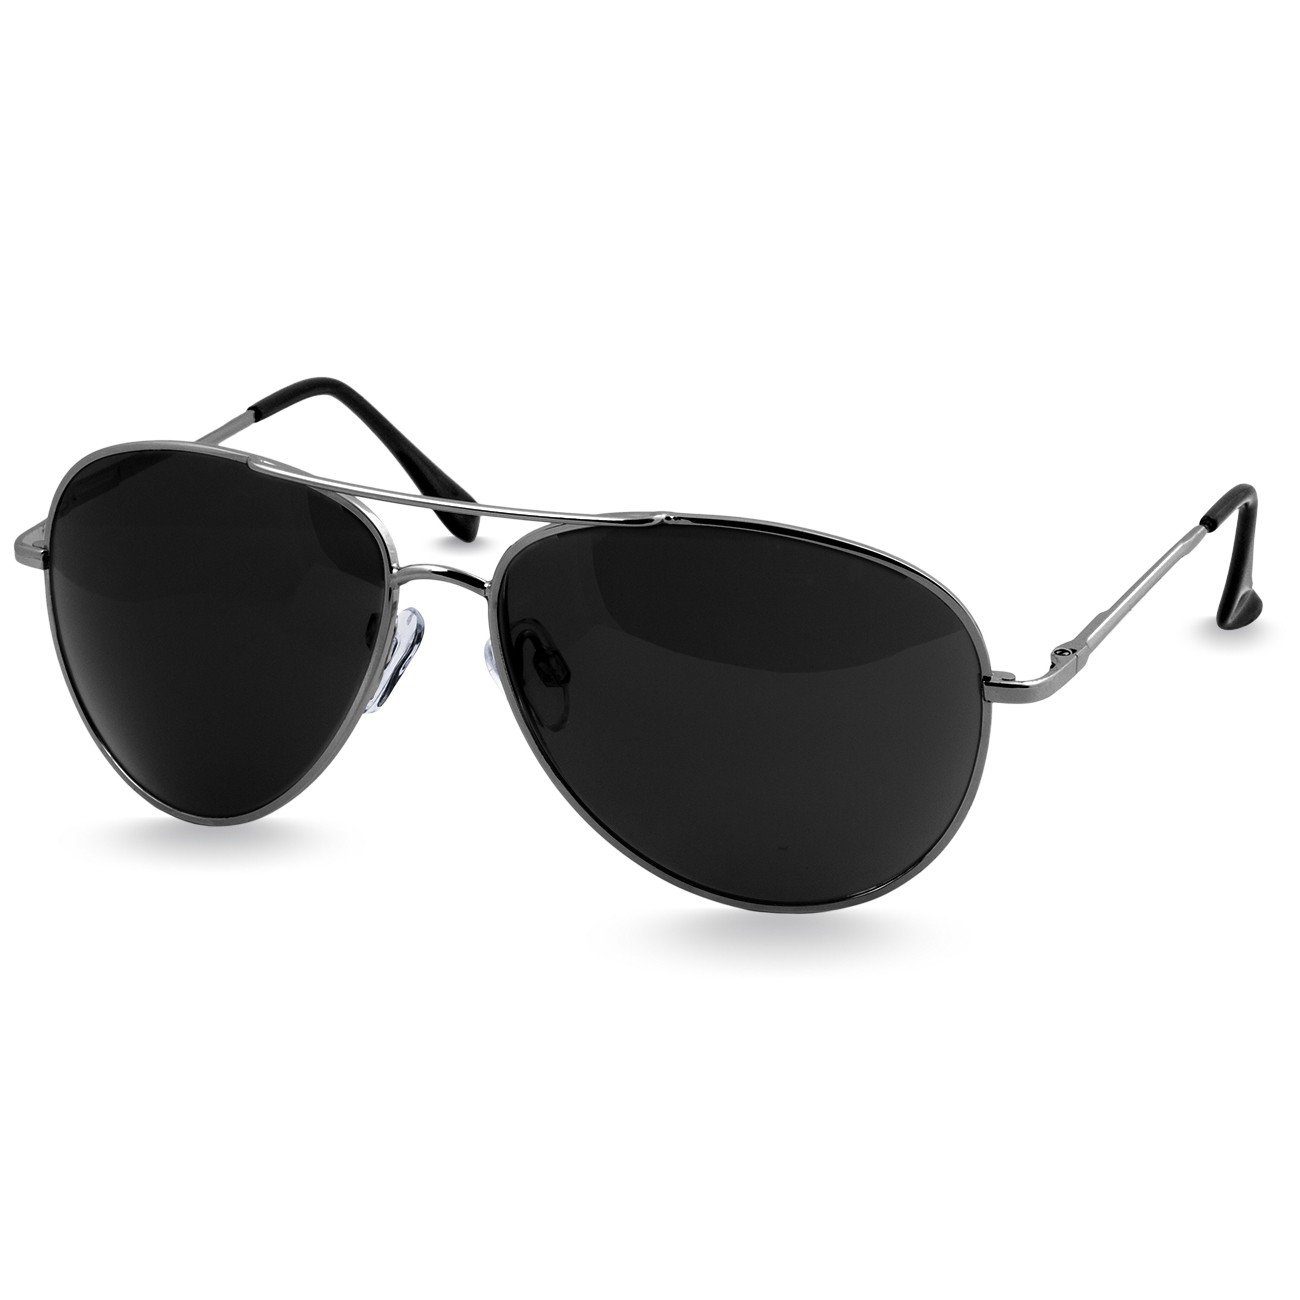 Pilotenbrille Retro SG013 / Unisex Caspar Sonnenbrille silber schwarz klassische